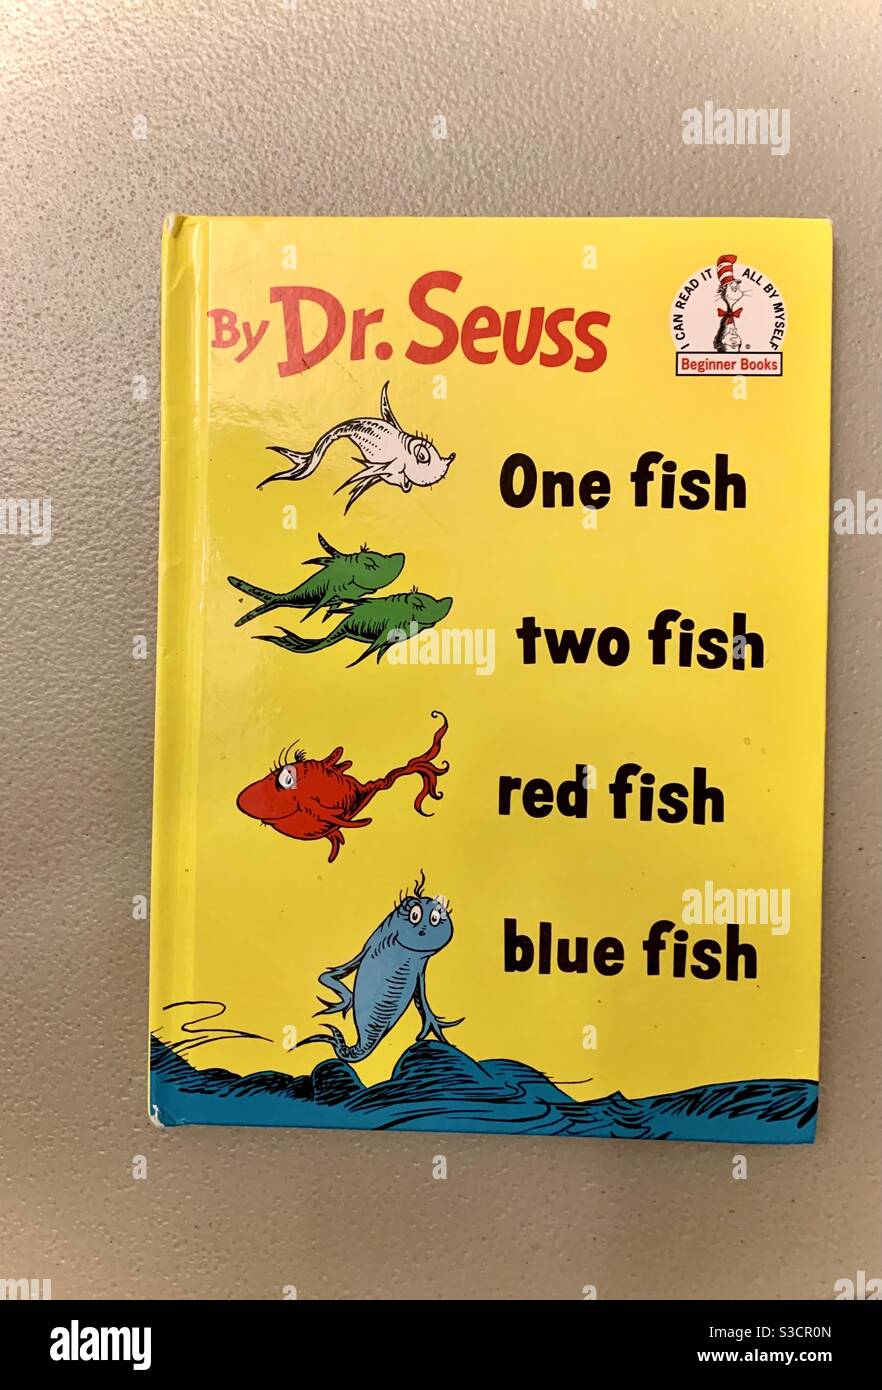 Livre pour enfants - un poisson, deux poissons, poisson rouge, poisson bleu par Dr. Seuss - apprentissage et éducation - livres d'images Banque D'Images